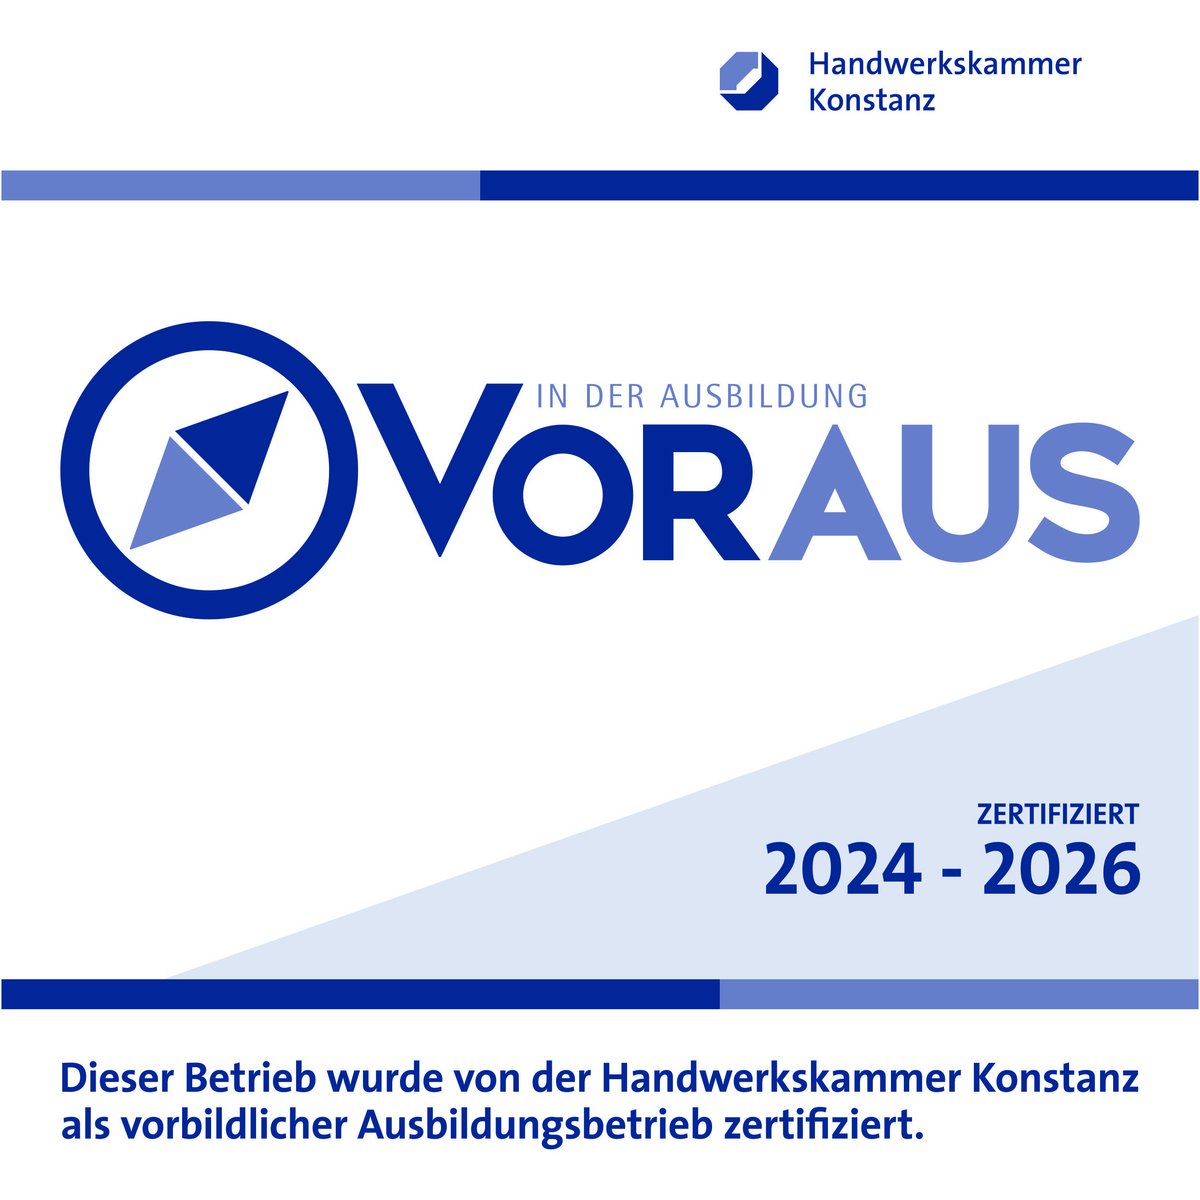 Zertifikat von Handwerkskammer Konstanz